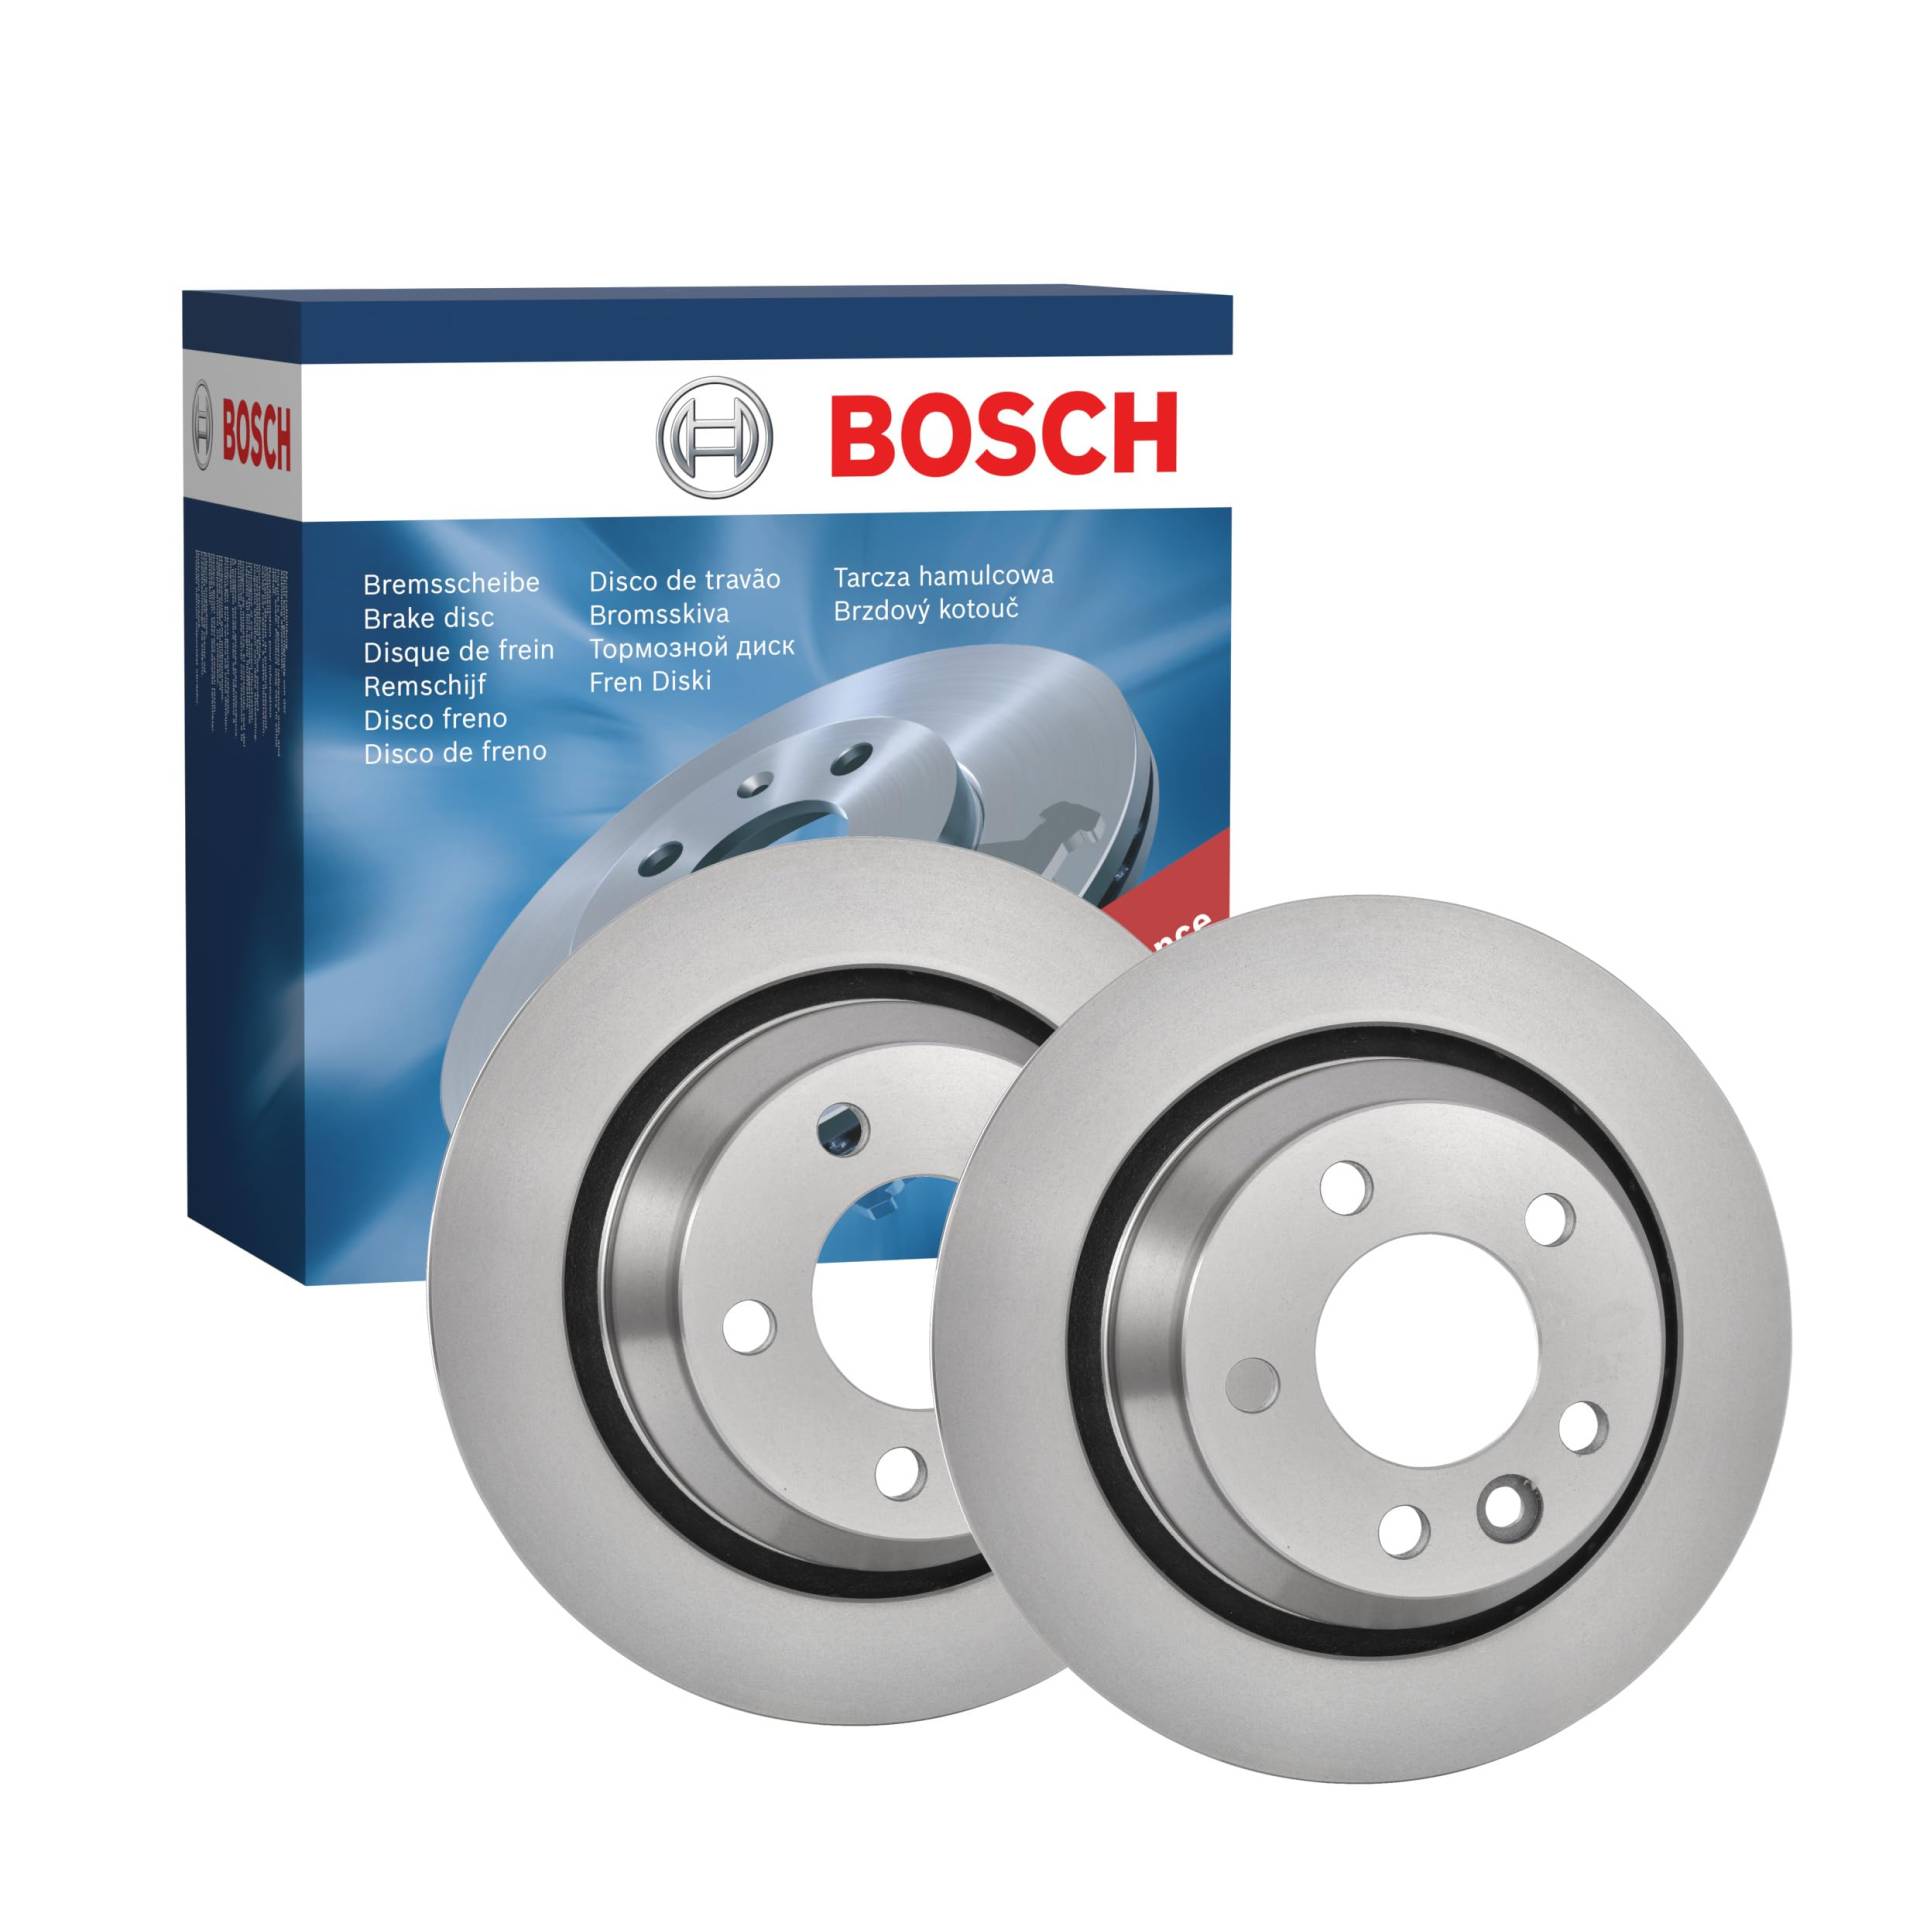 Bosch BD1024 Bremsscheiben - Hinterachse - ECE-R90 Zertifizierung - zwei Bremsscheiben pro Set von Bosch Automotive